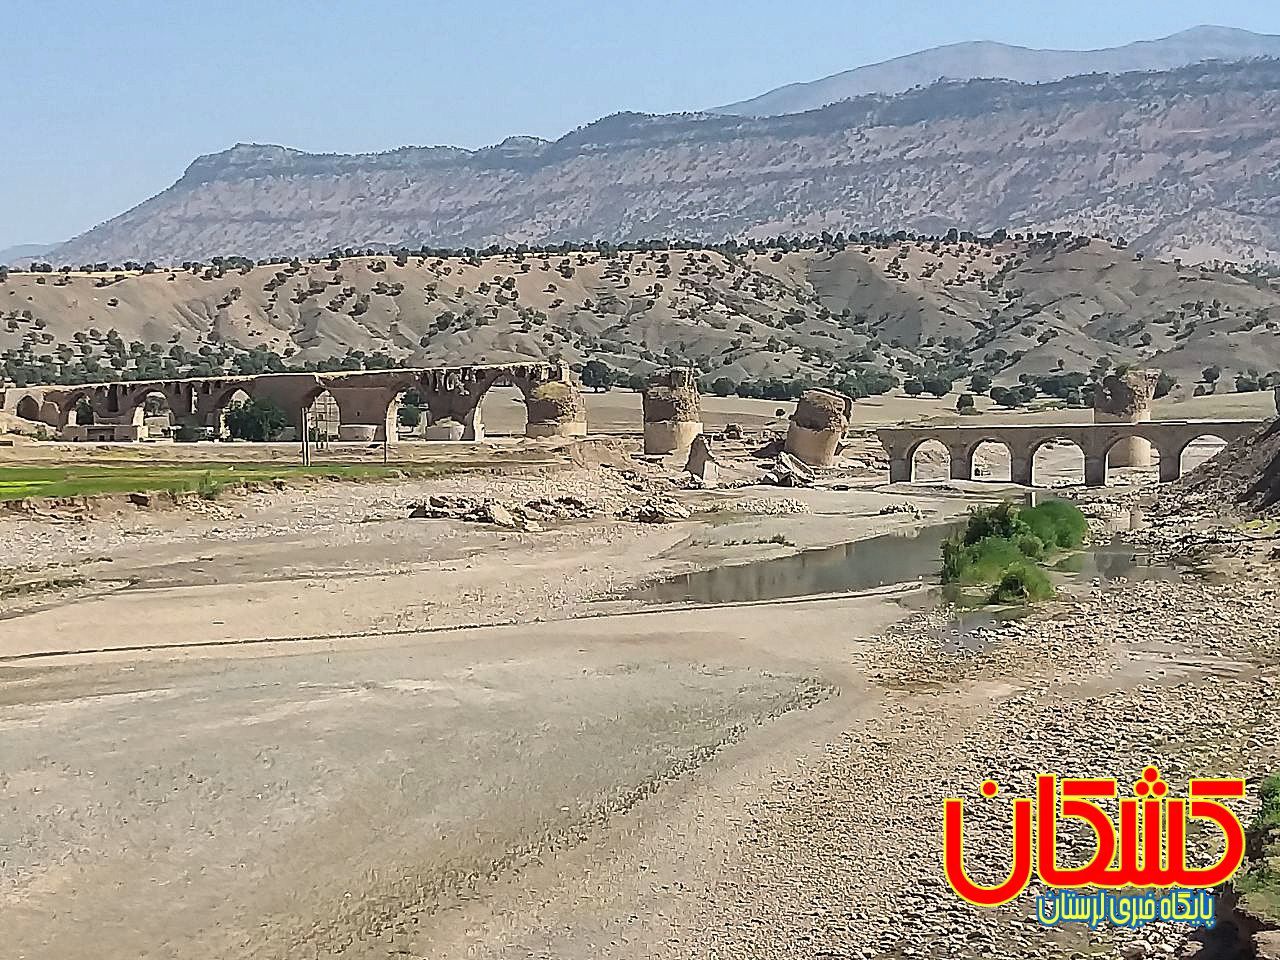 تصویری دیگر از فاجعه خشکی رودخانه کشکان، شاهرگ حیاتی استان